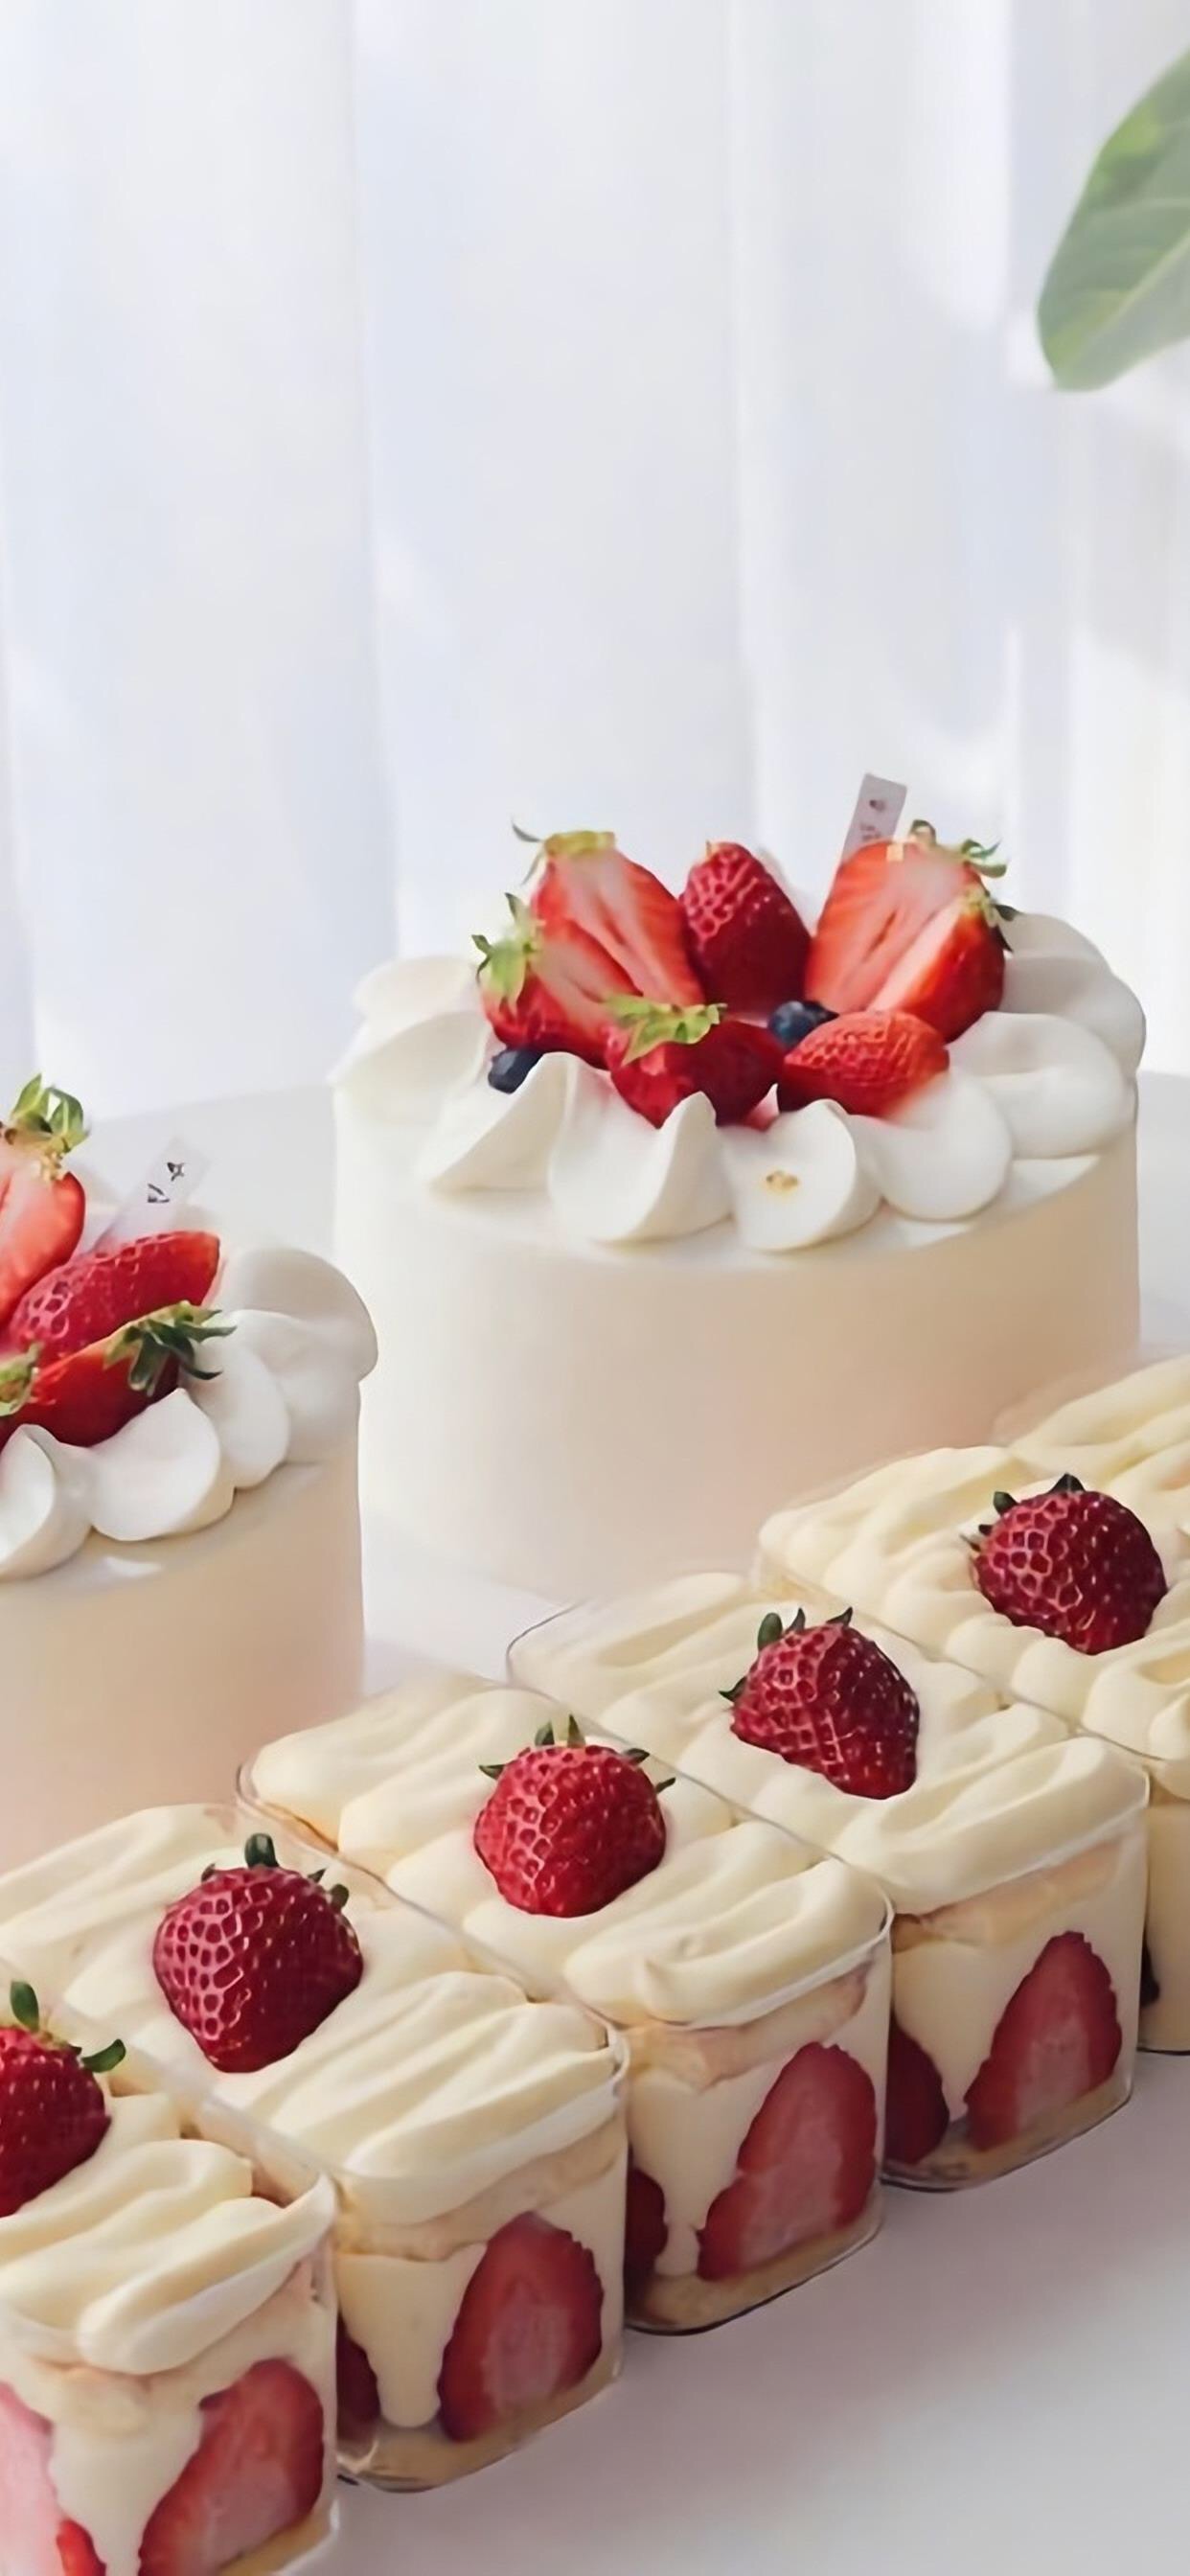 草莓蛋糕小游戏_草莓蛋糕游戏手机_草莓蛋糕的游戏